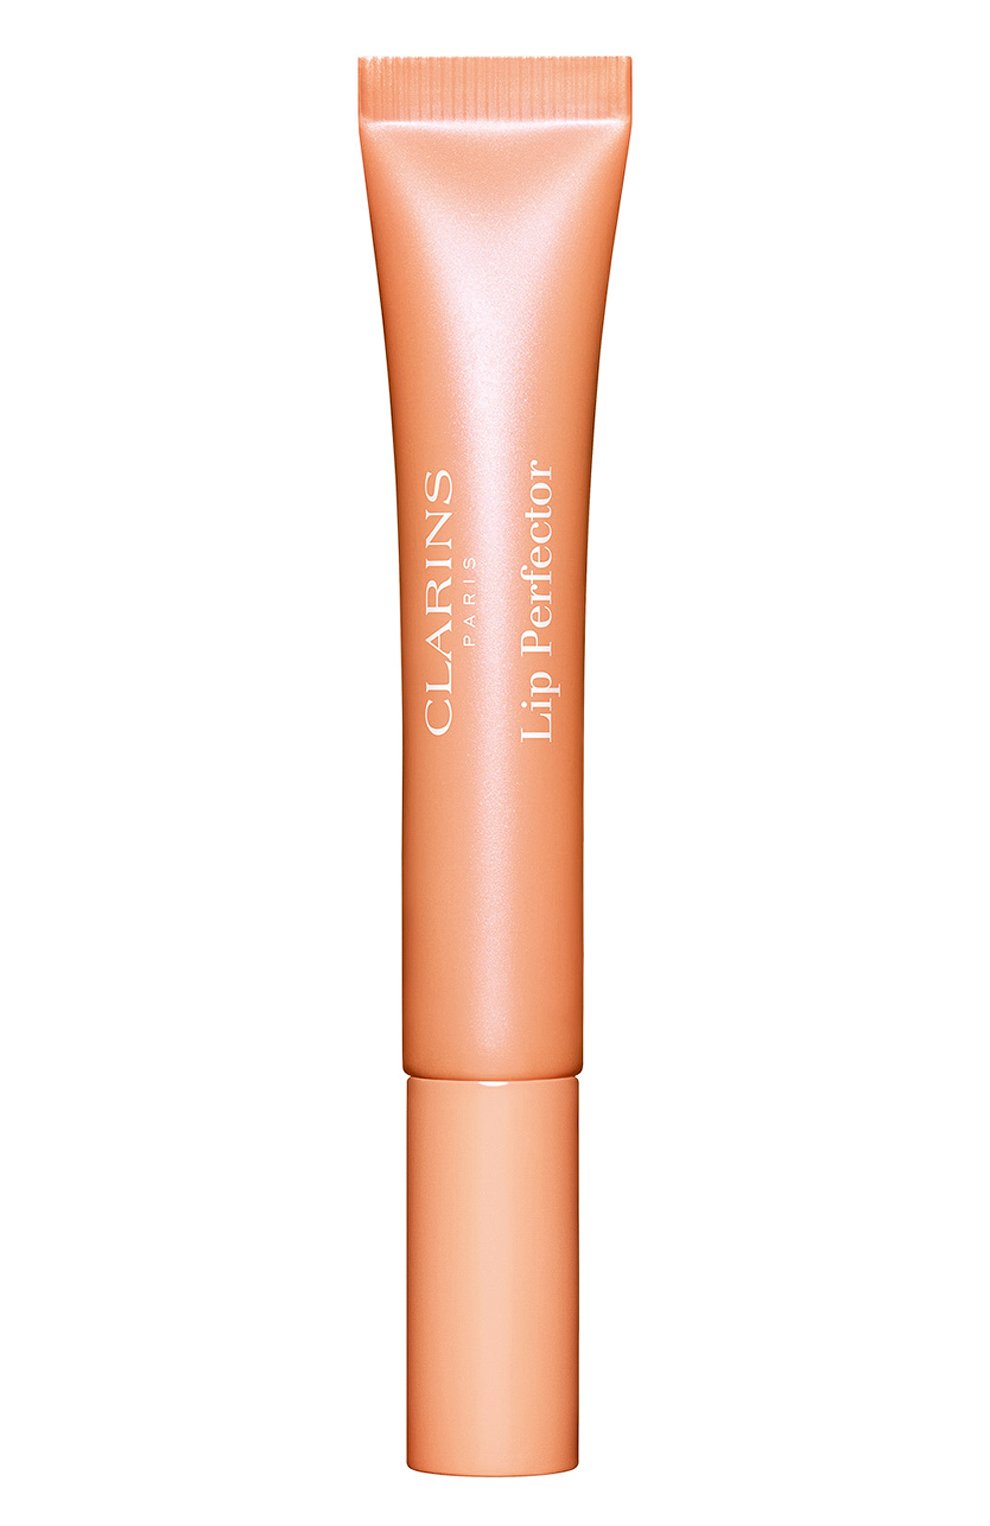 Блеск для губ lip perfector, оттенок 22 peach glow (12ml) CLARINS  цвета, арт. 80098704 | Фото 1 (Обьем косметики: 100ml; Финишное покрытие: Блестящий)